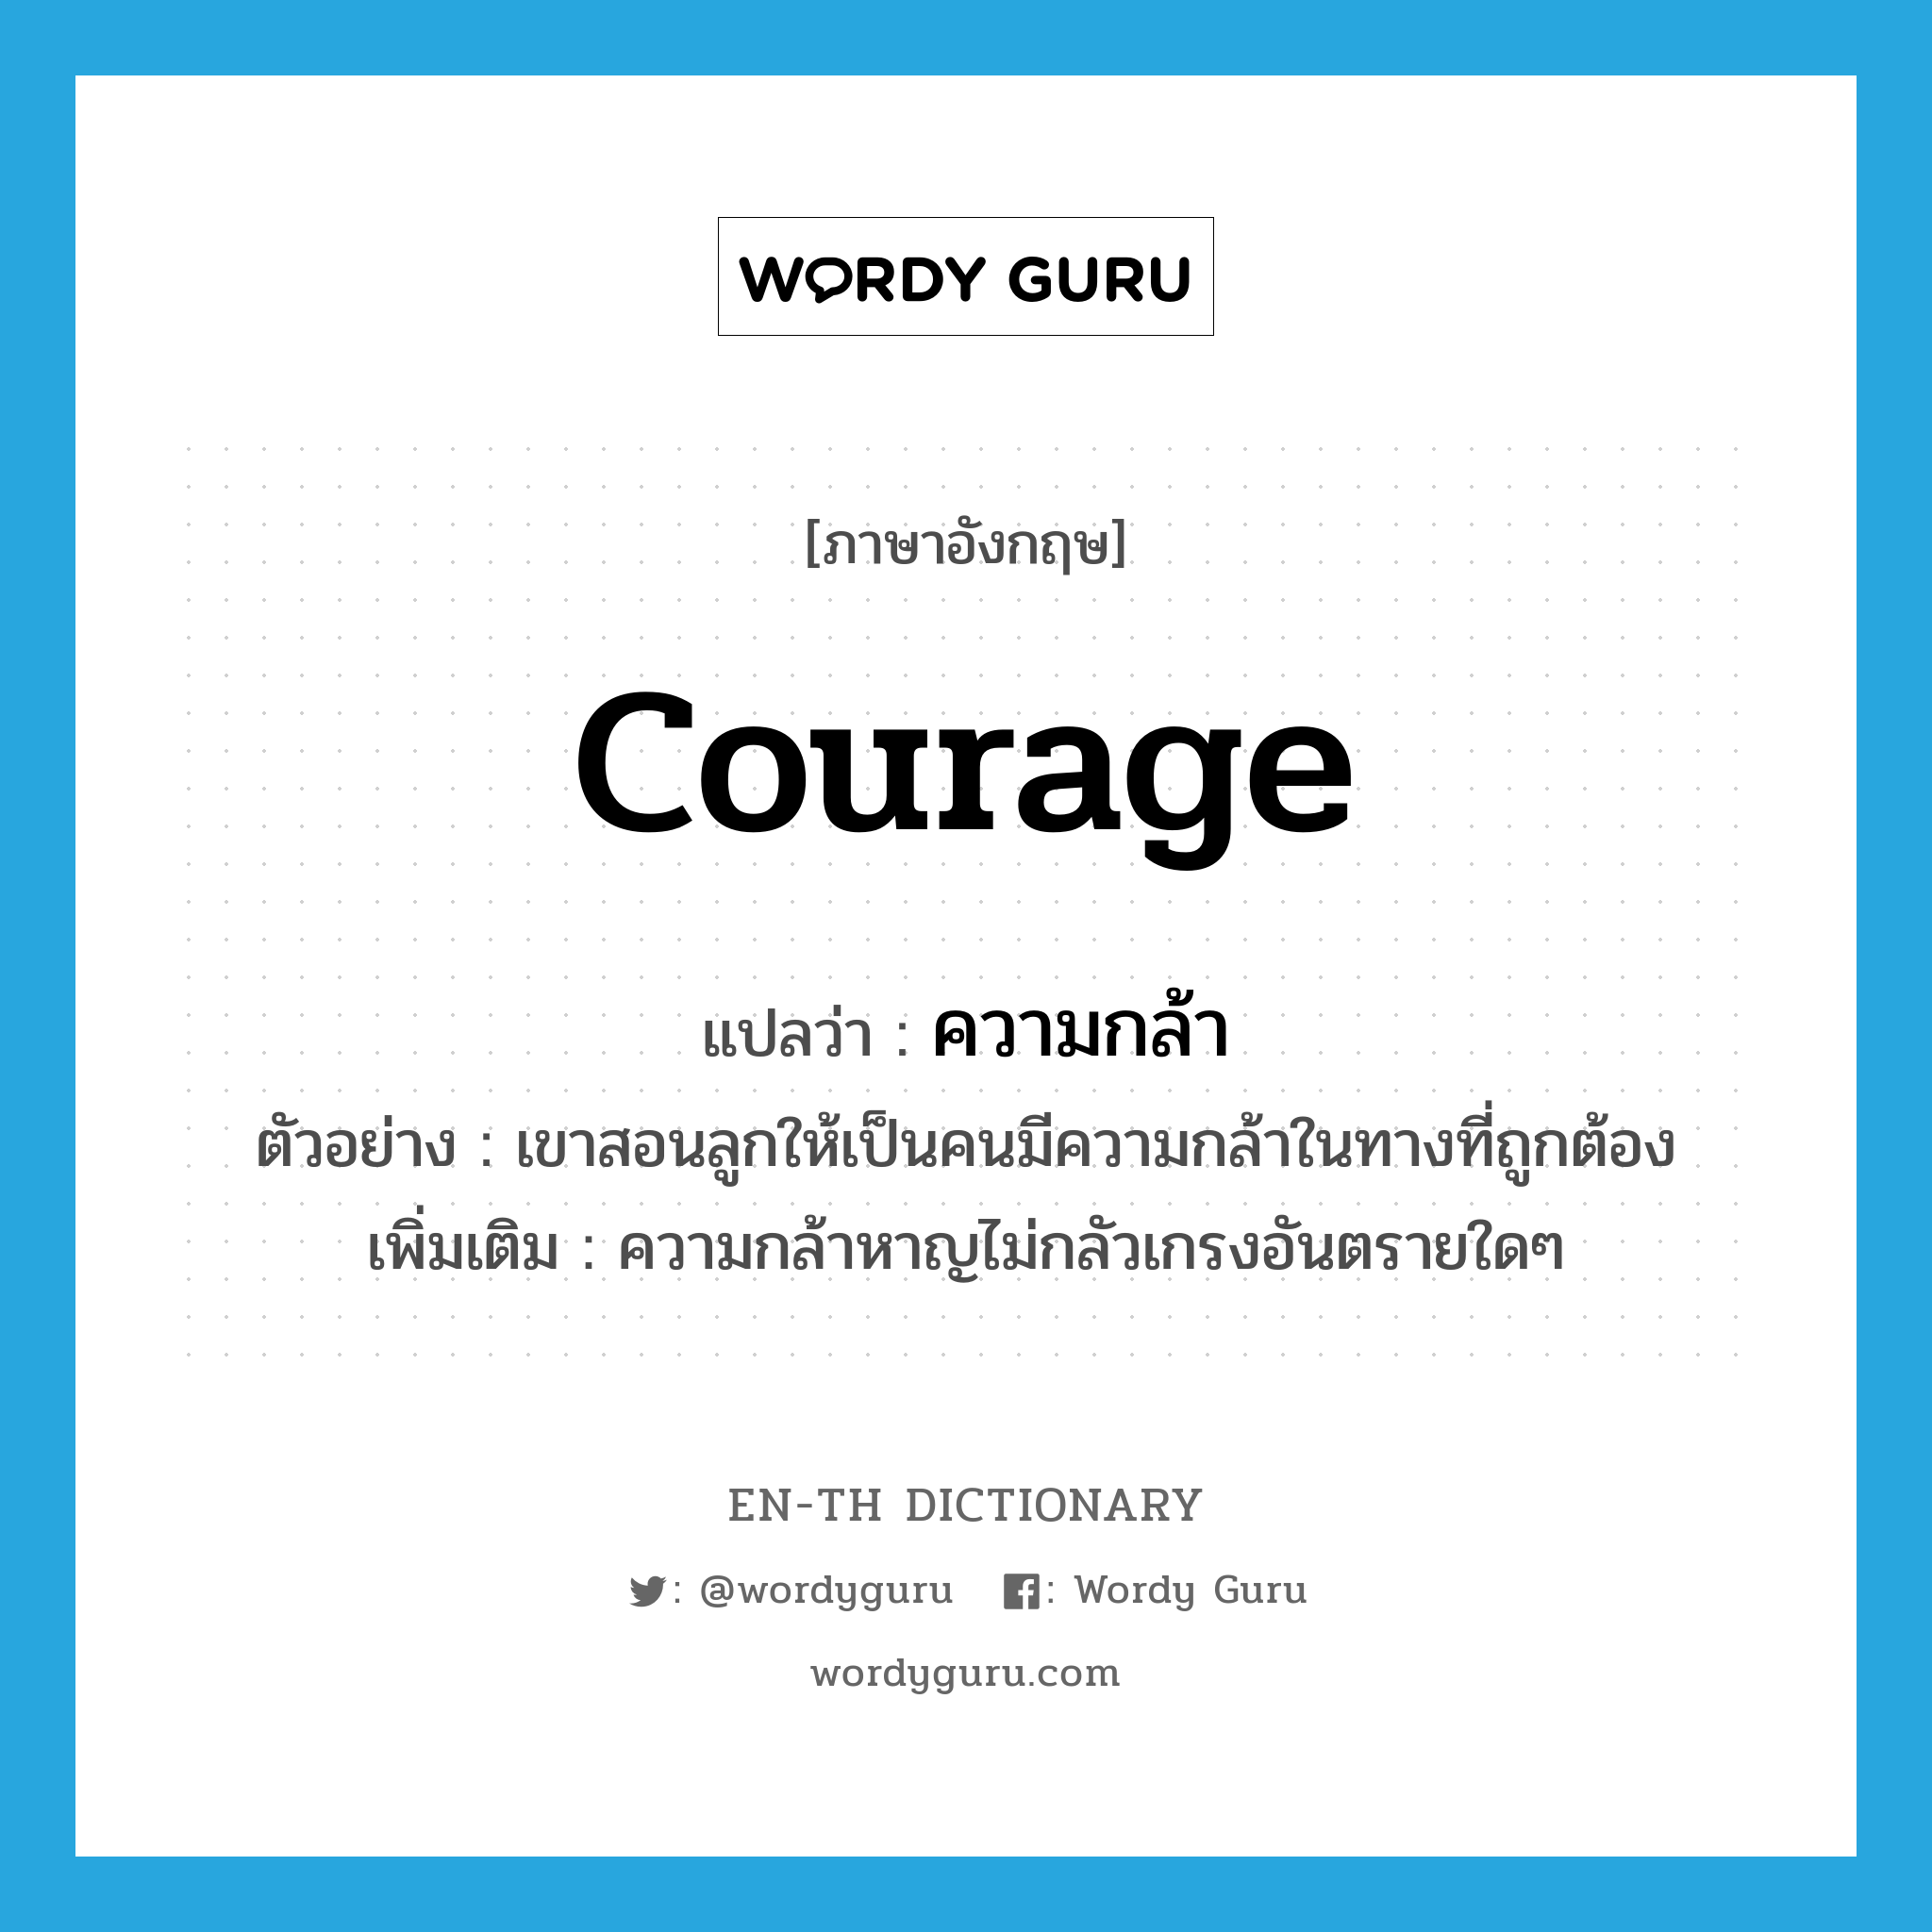 ความกล้า ภาษาอังกฤษ?, คำศัพท์ภาษาอังกฤษ ความกล้า แปลว่า courage ประเภท N ตัวอย่าง เขาสอนลูกให้เป็นคนมีความกล้าในทางที่ถูกต้อง เพิ่มเติม ความกล้าหาญไม่กลัวเกรงอันตรายใดๆ หมวด N